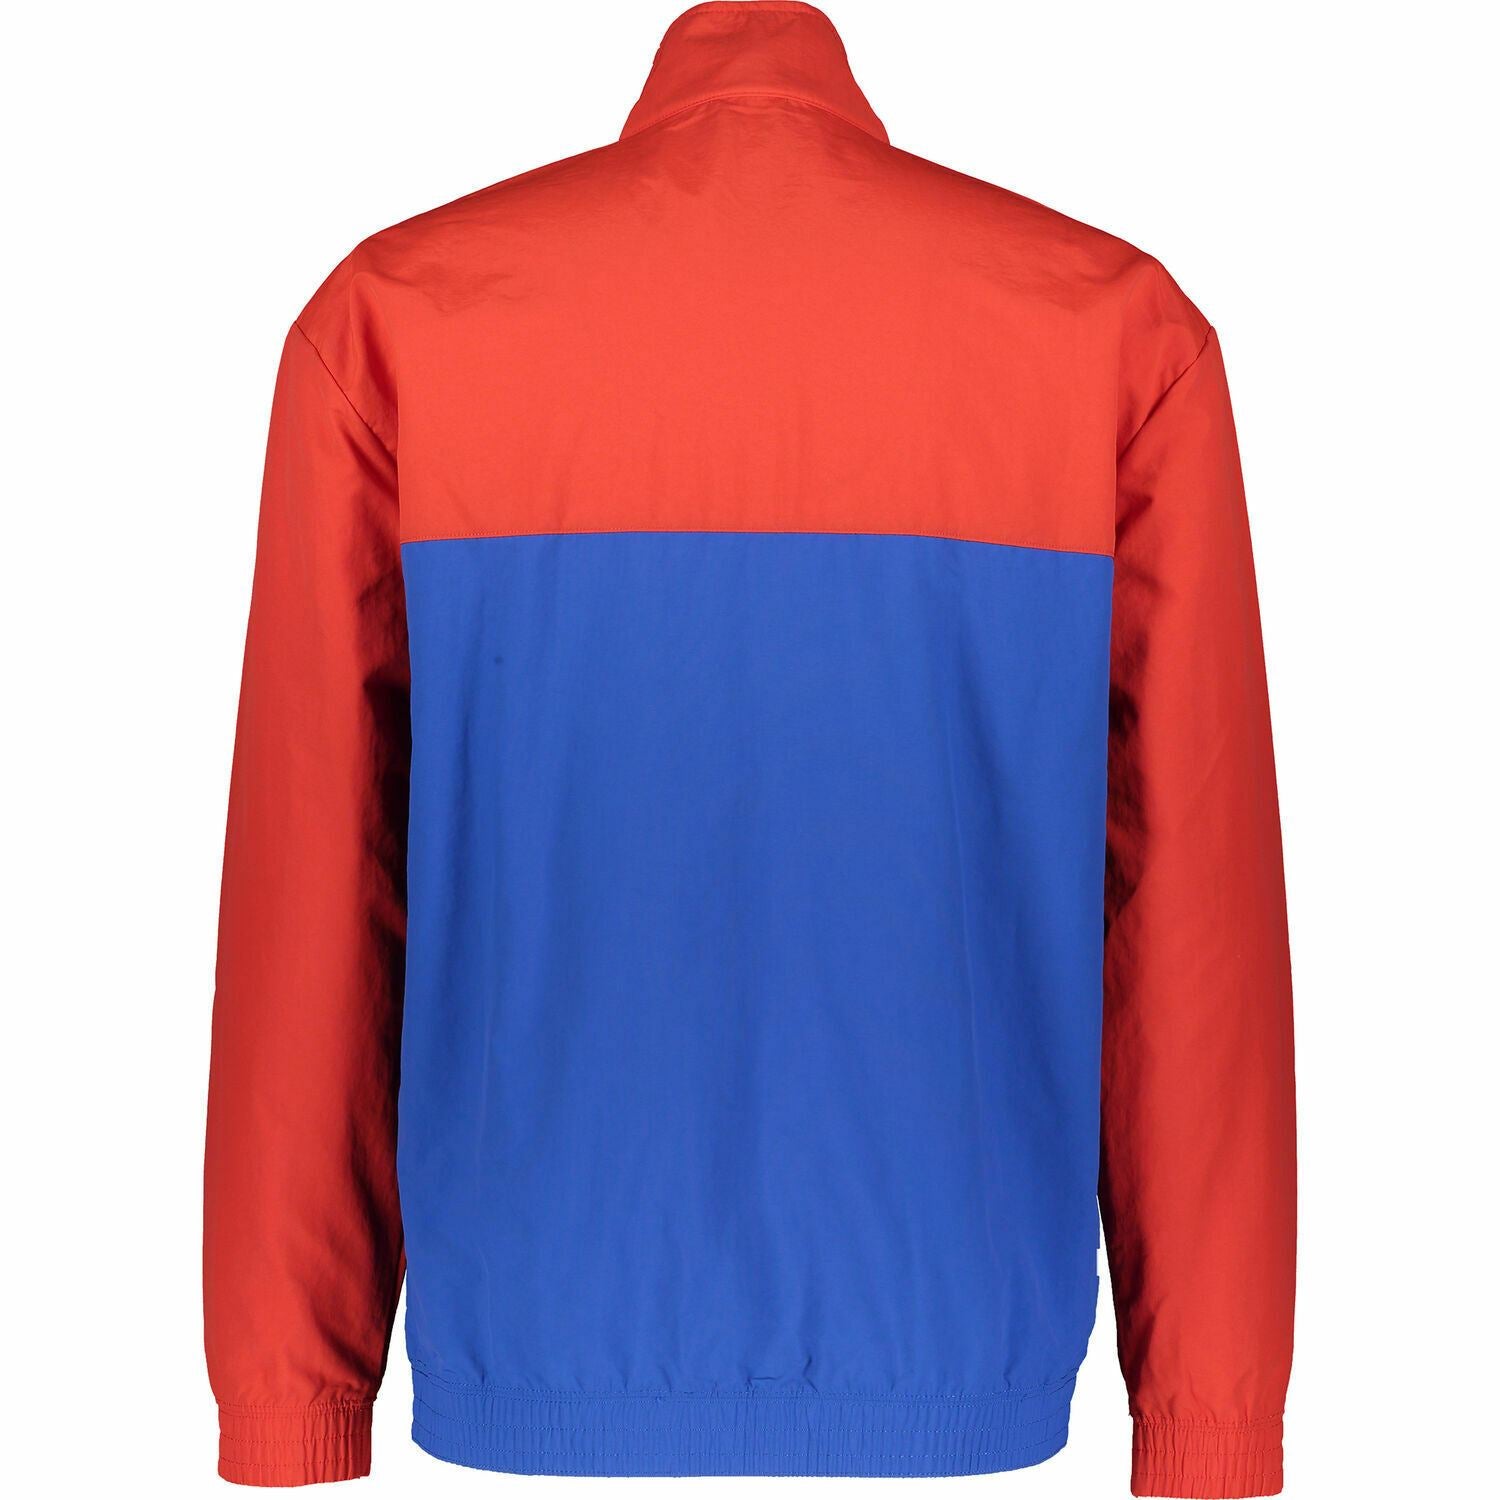 CHAMPION Men's Zipped Colour Block Jacket, Red & Blue, size L